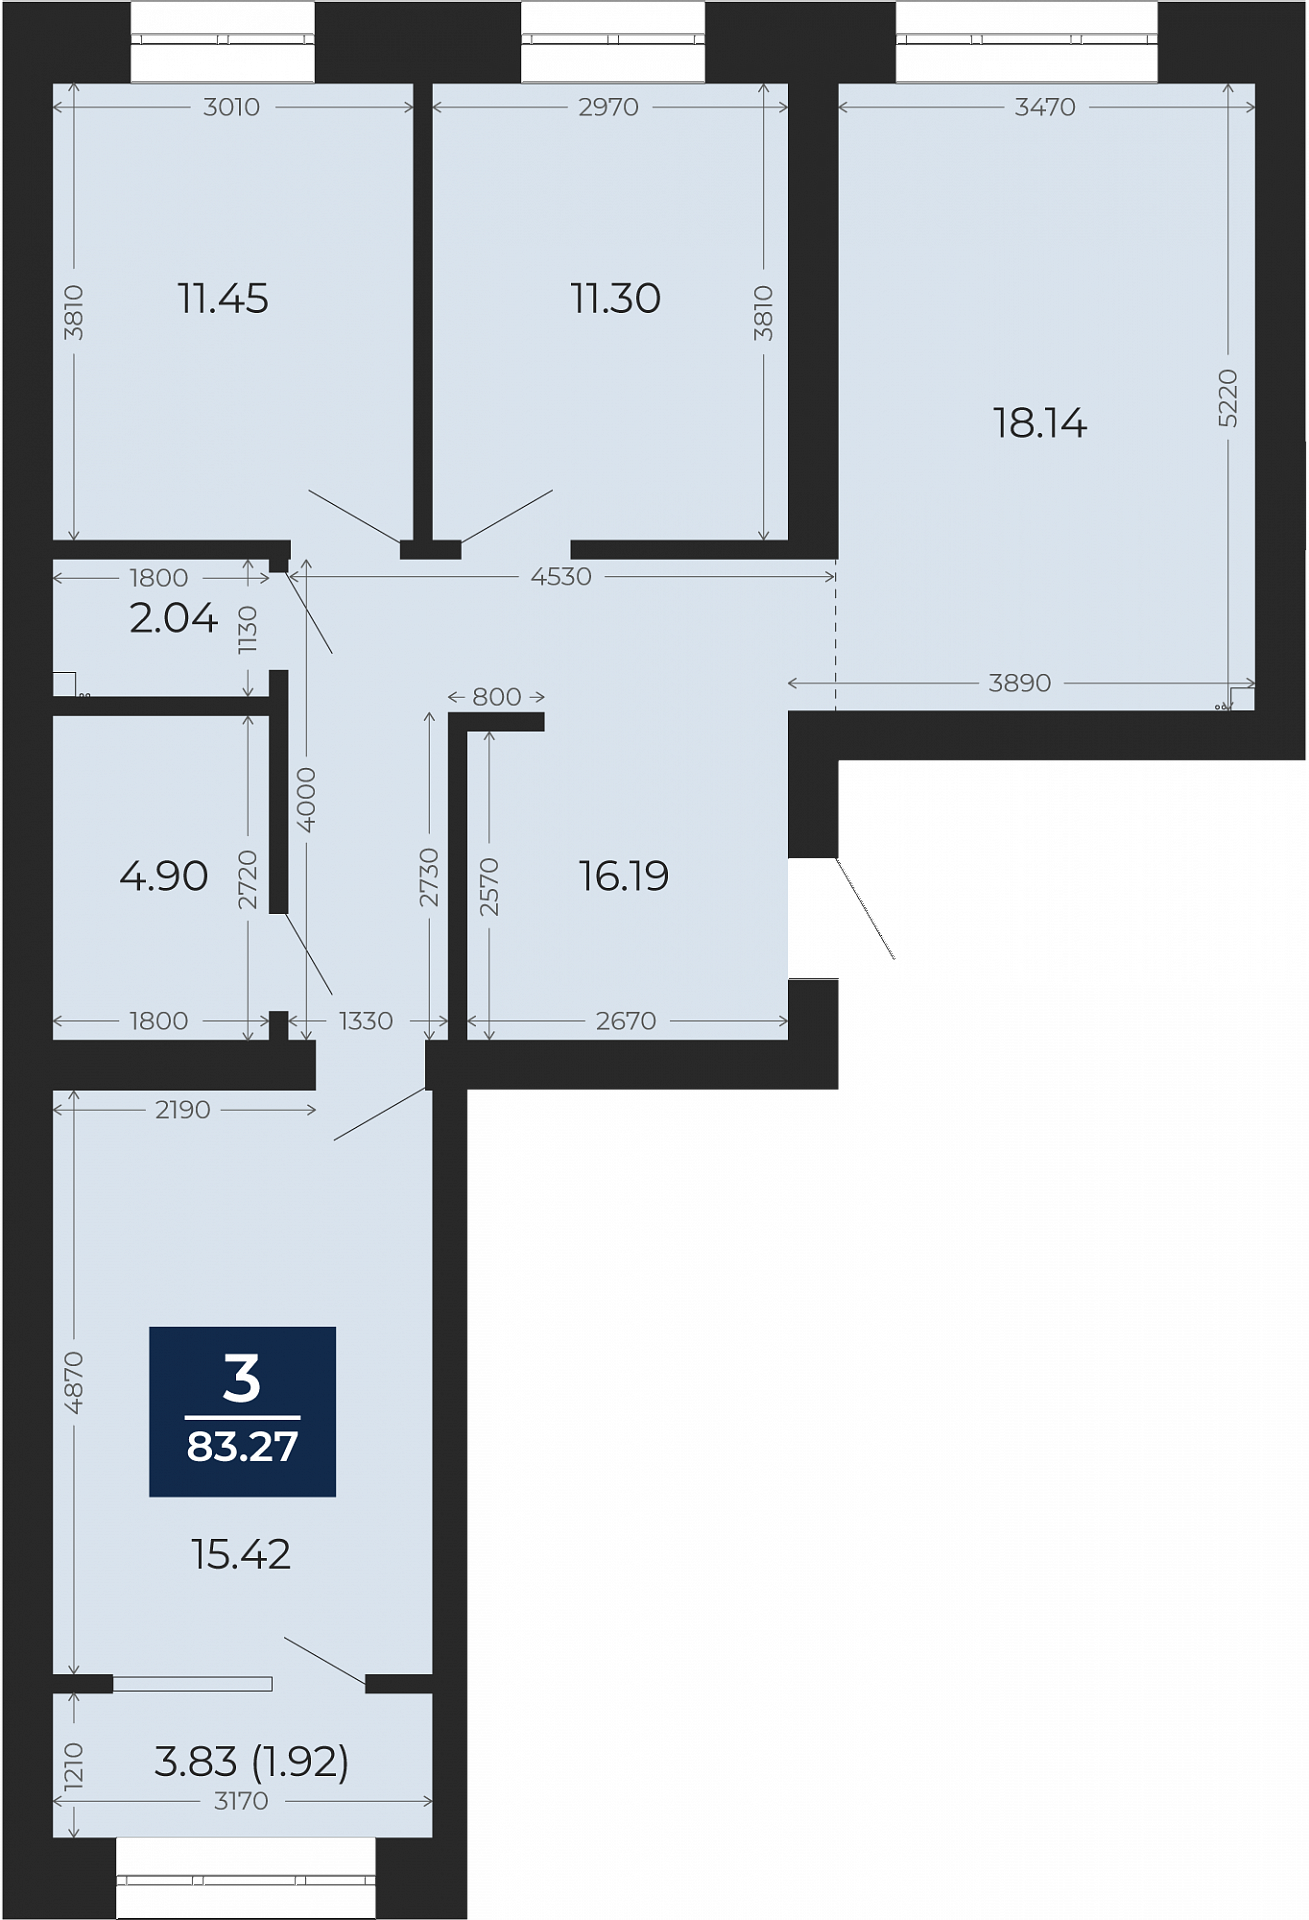 Квартира № 99, 3-комнатная, 83.27 кв. м, 3 этаж